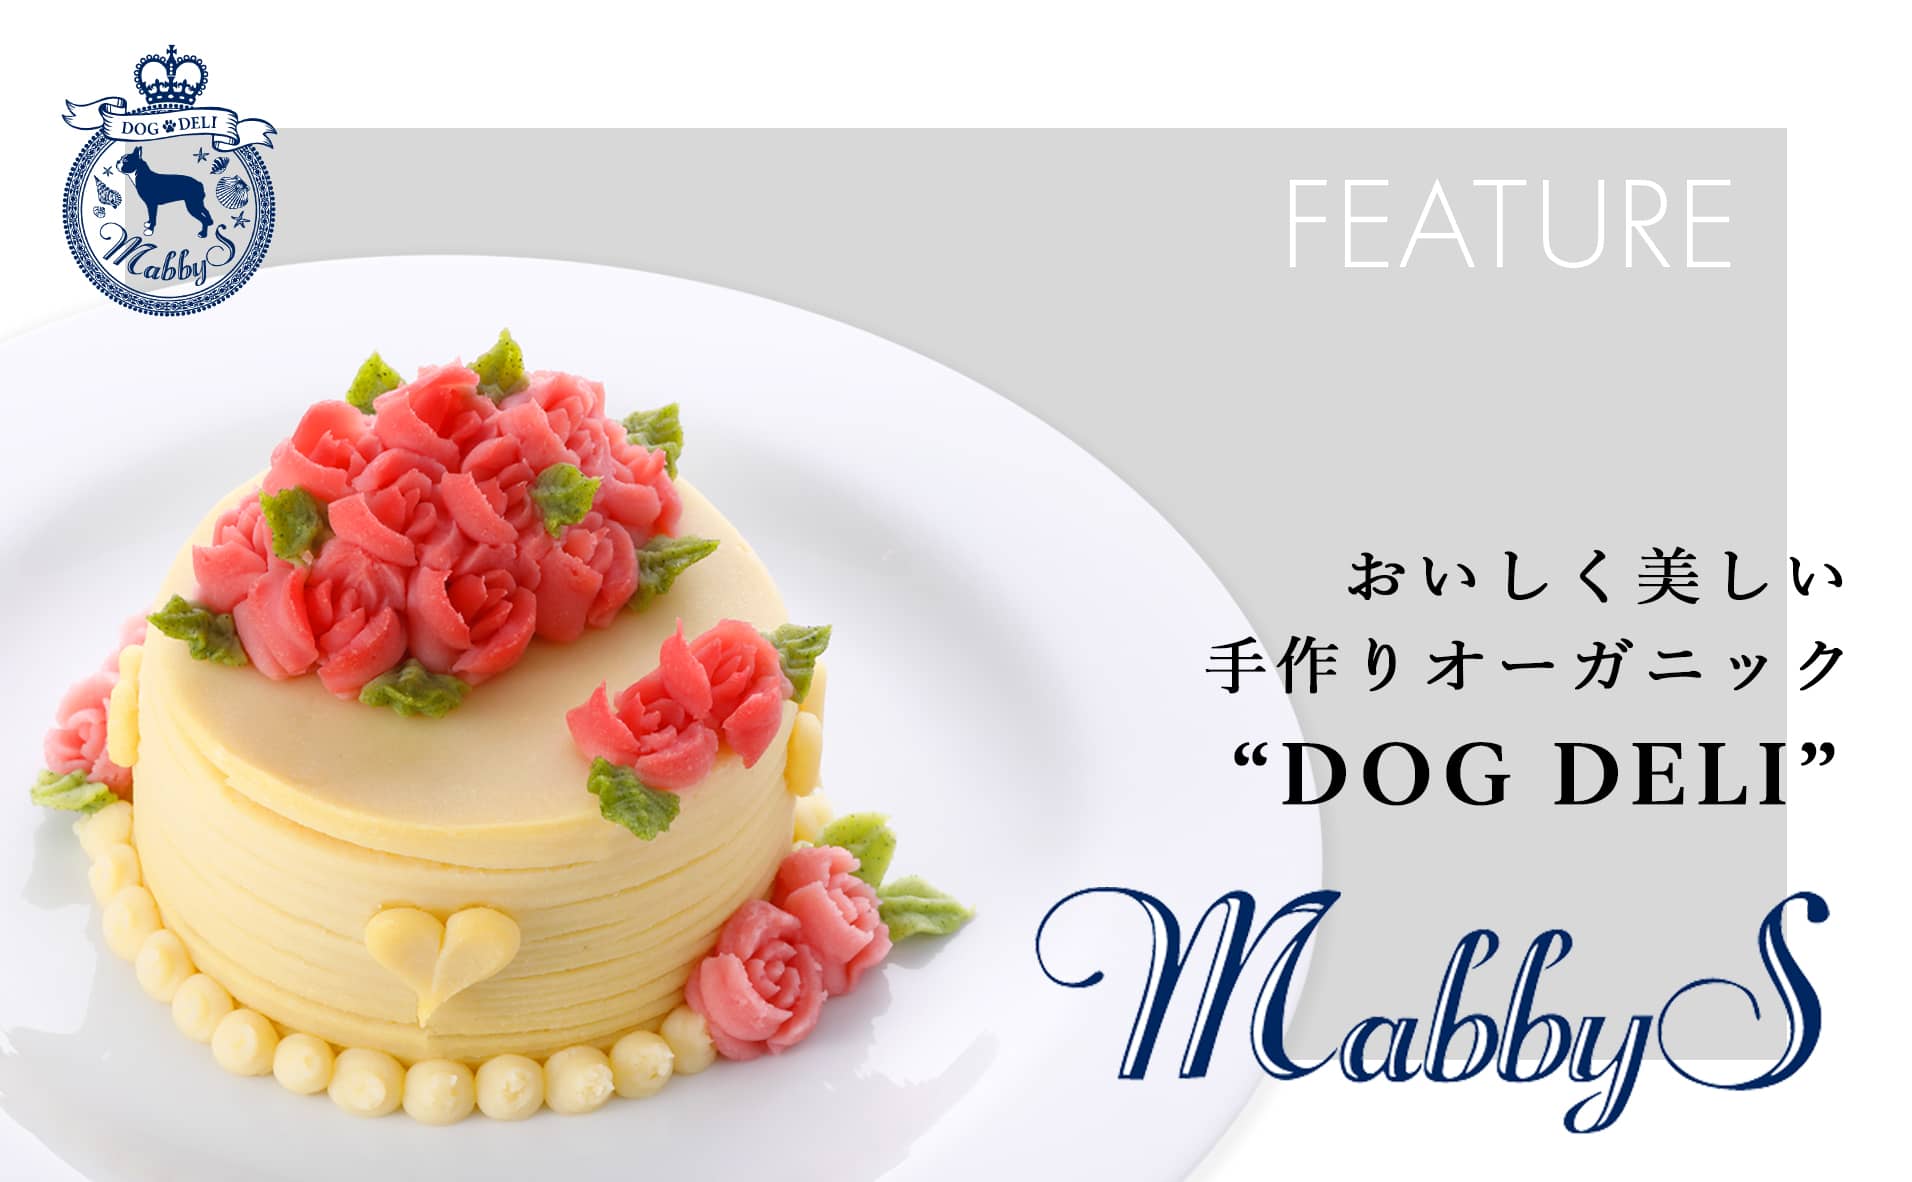 【特集】おいしく美しい手作りオーガニック犬用ごはん『MabbyS Dog Deli』